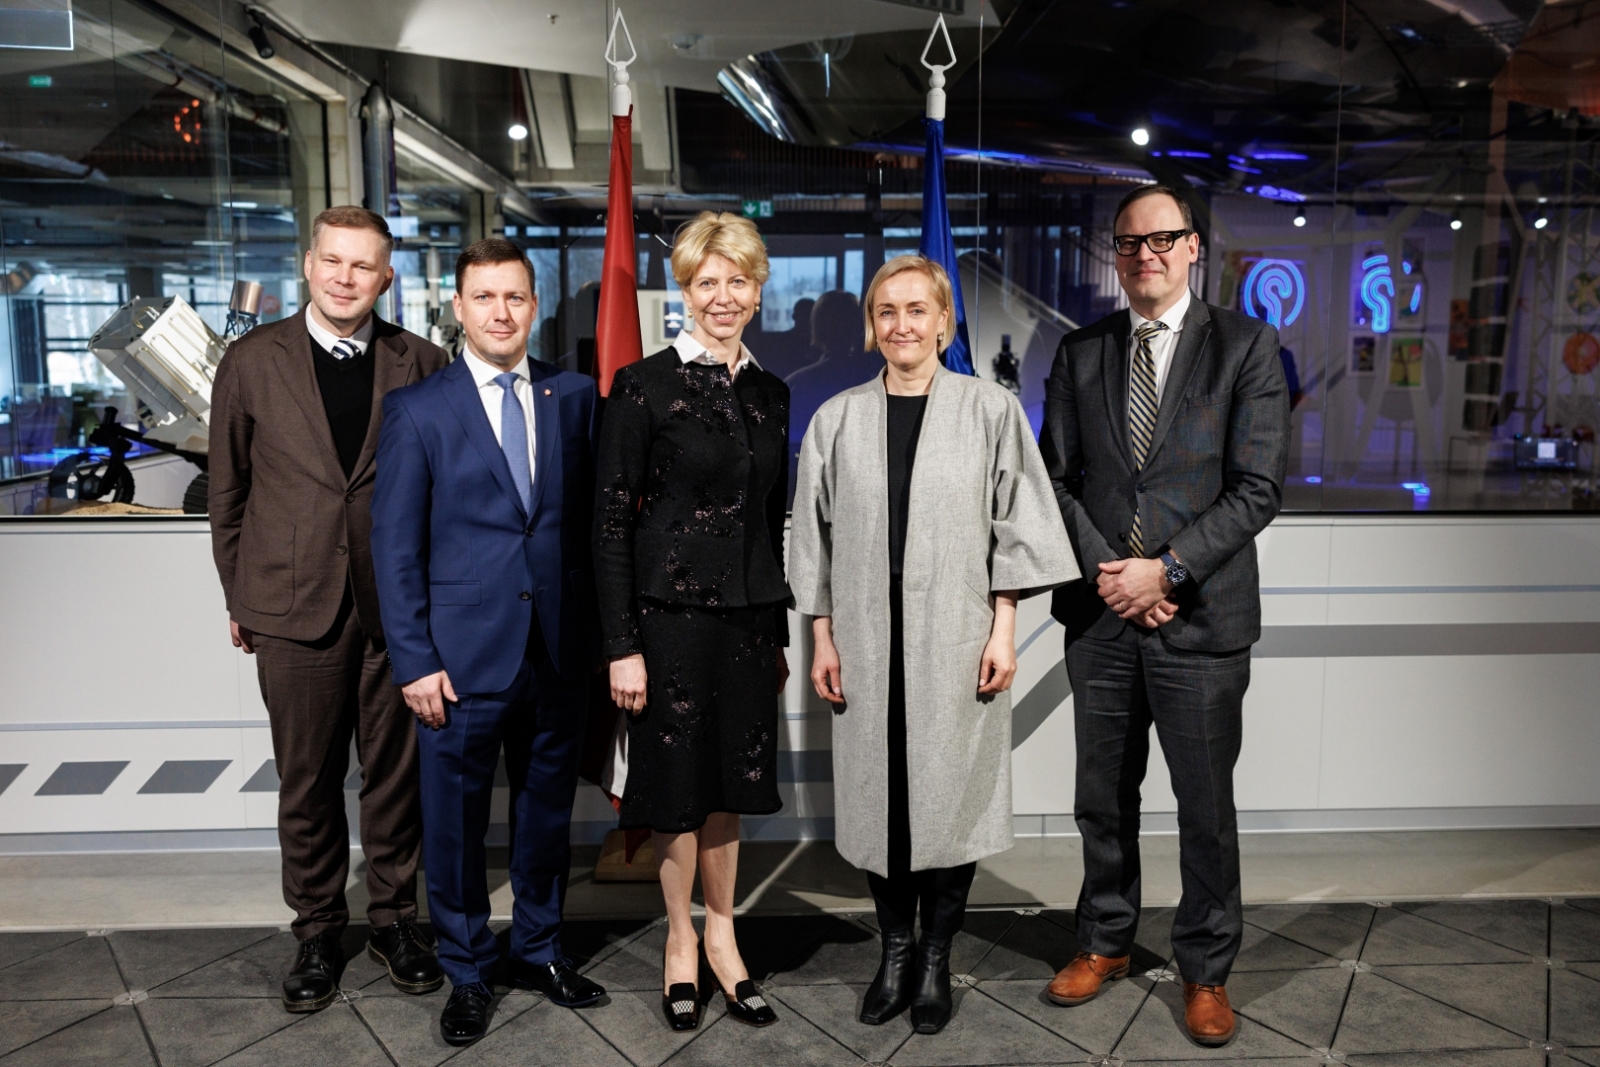 Igaunijas izglītības ministres Kristīnas Kallasas vizīte Latvijā